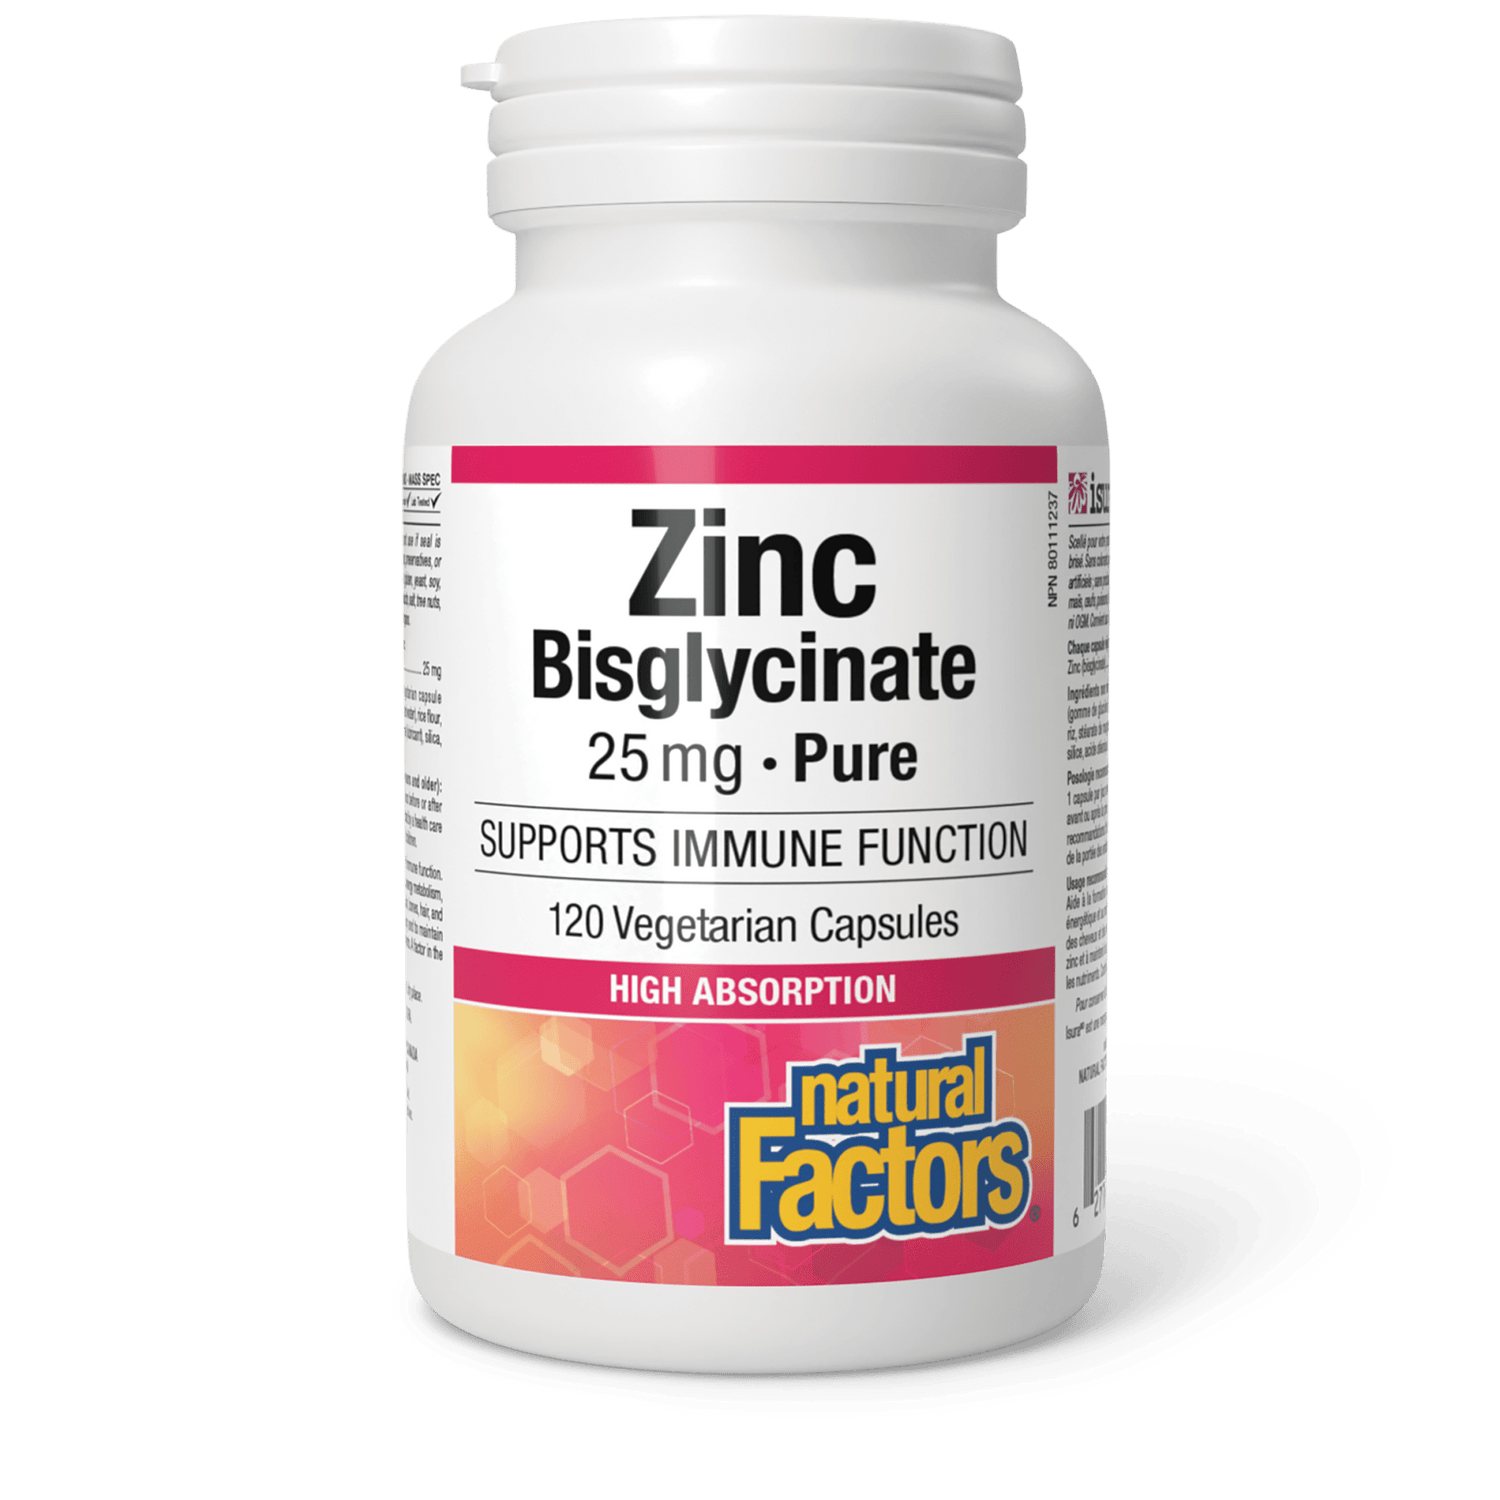 Zinc Bisglycinate 25 mg, Natural Factors|v|image|1692